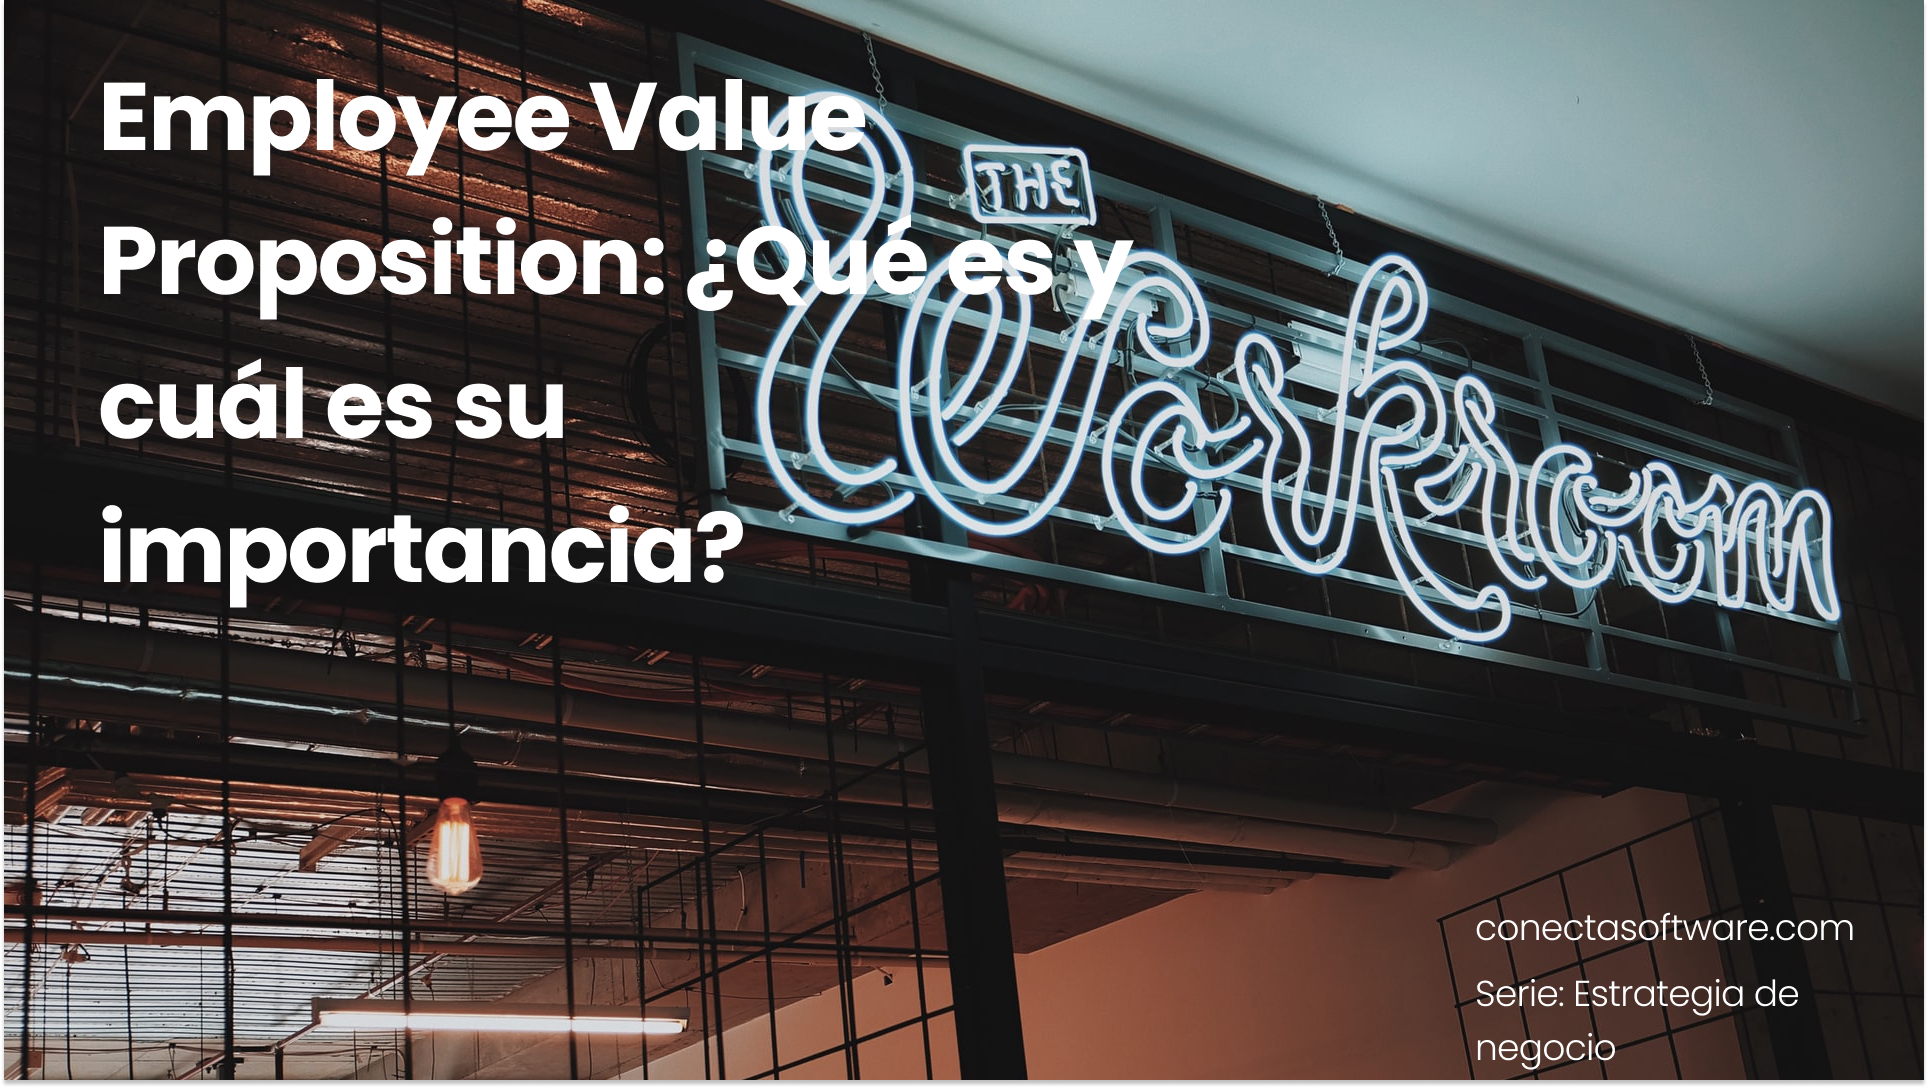 Employee Value Proposition: ¿Qué es y cuál es su importancia?